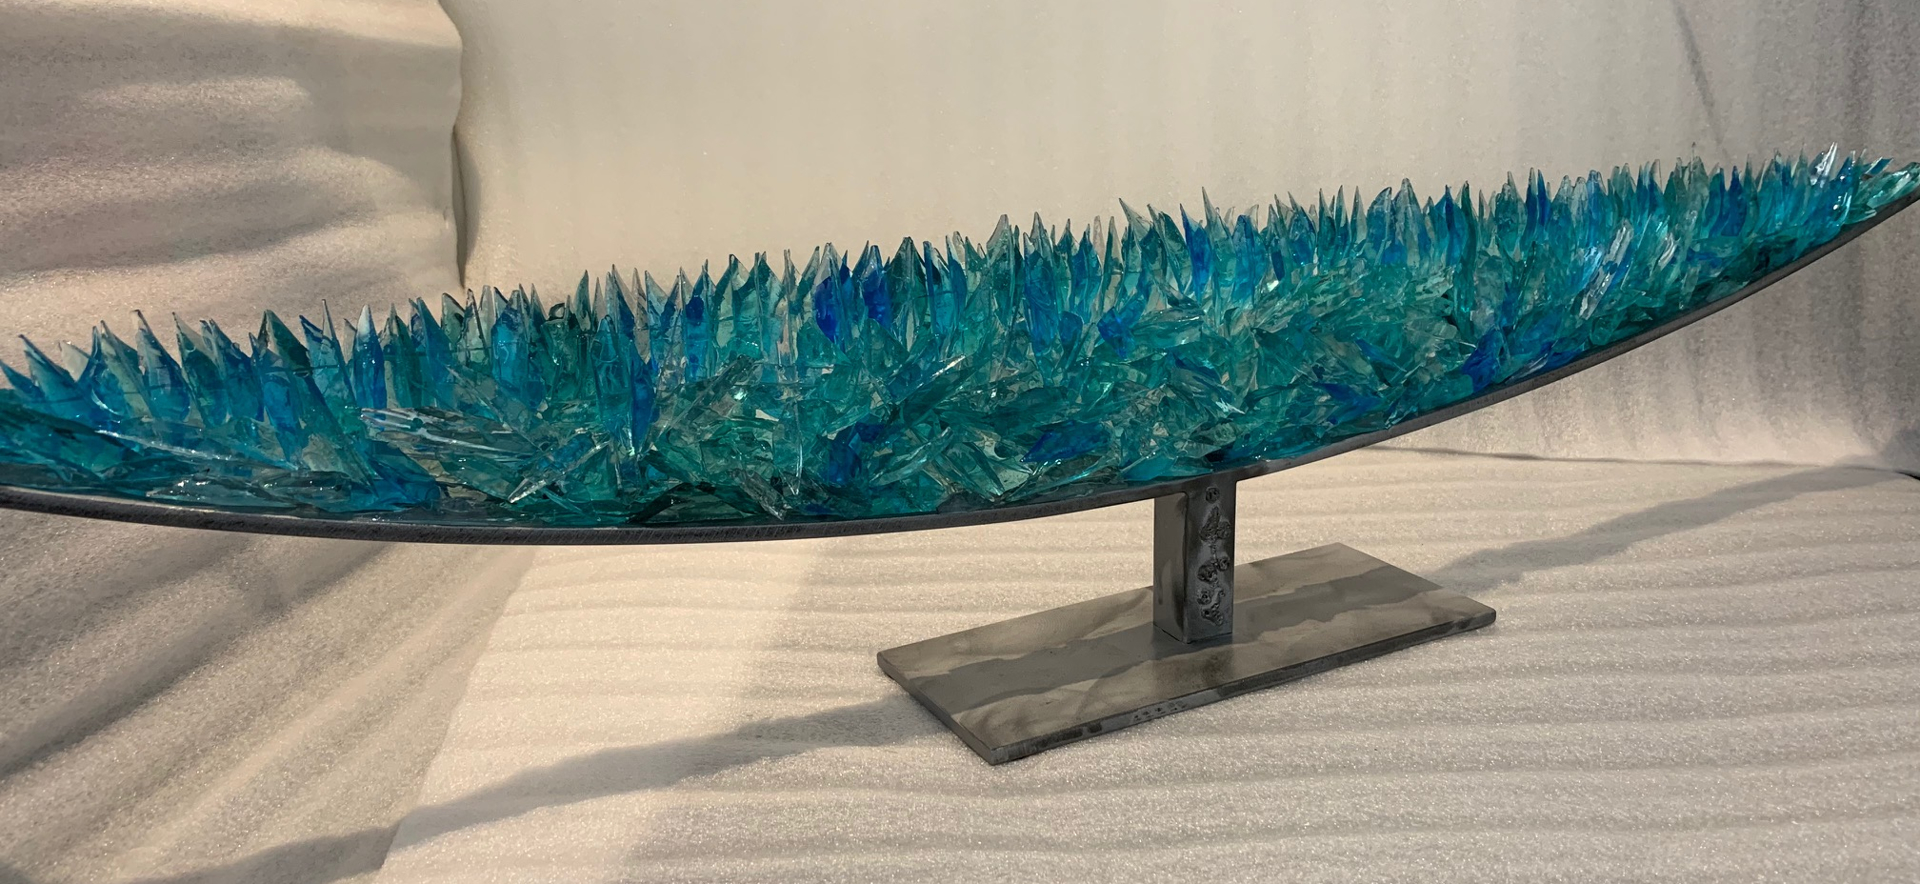 Shard Boat (Turquoise) by Reza Pishgahi